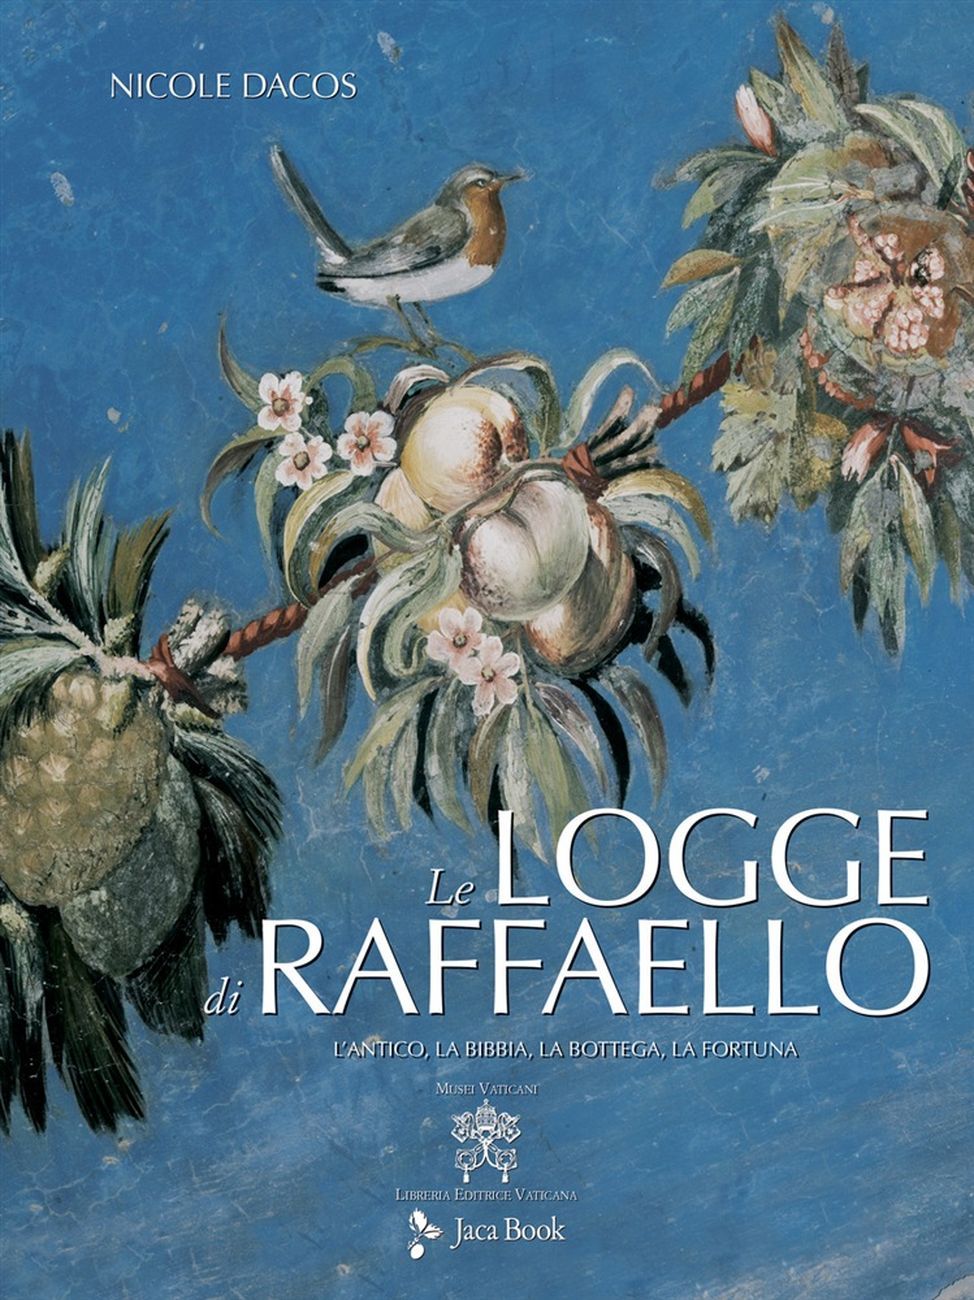 Nicole Dacos – Le Logge di Raffaello (Jaca Book – Libreria Editrice Vaticana, Milano – Città del Vaticano 2020²)